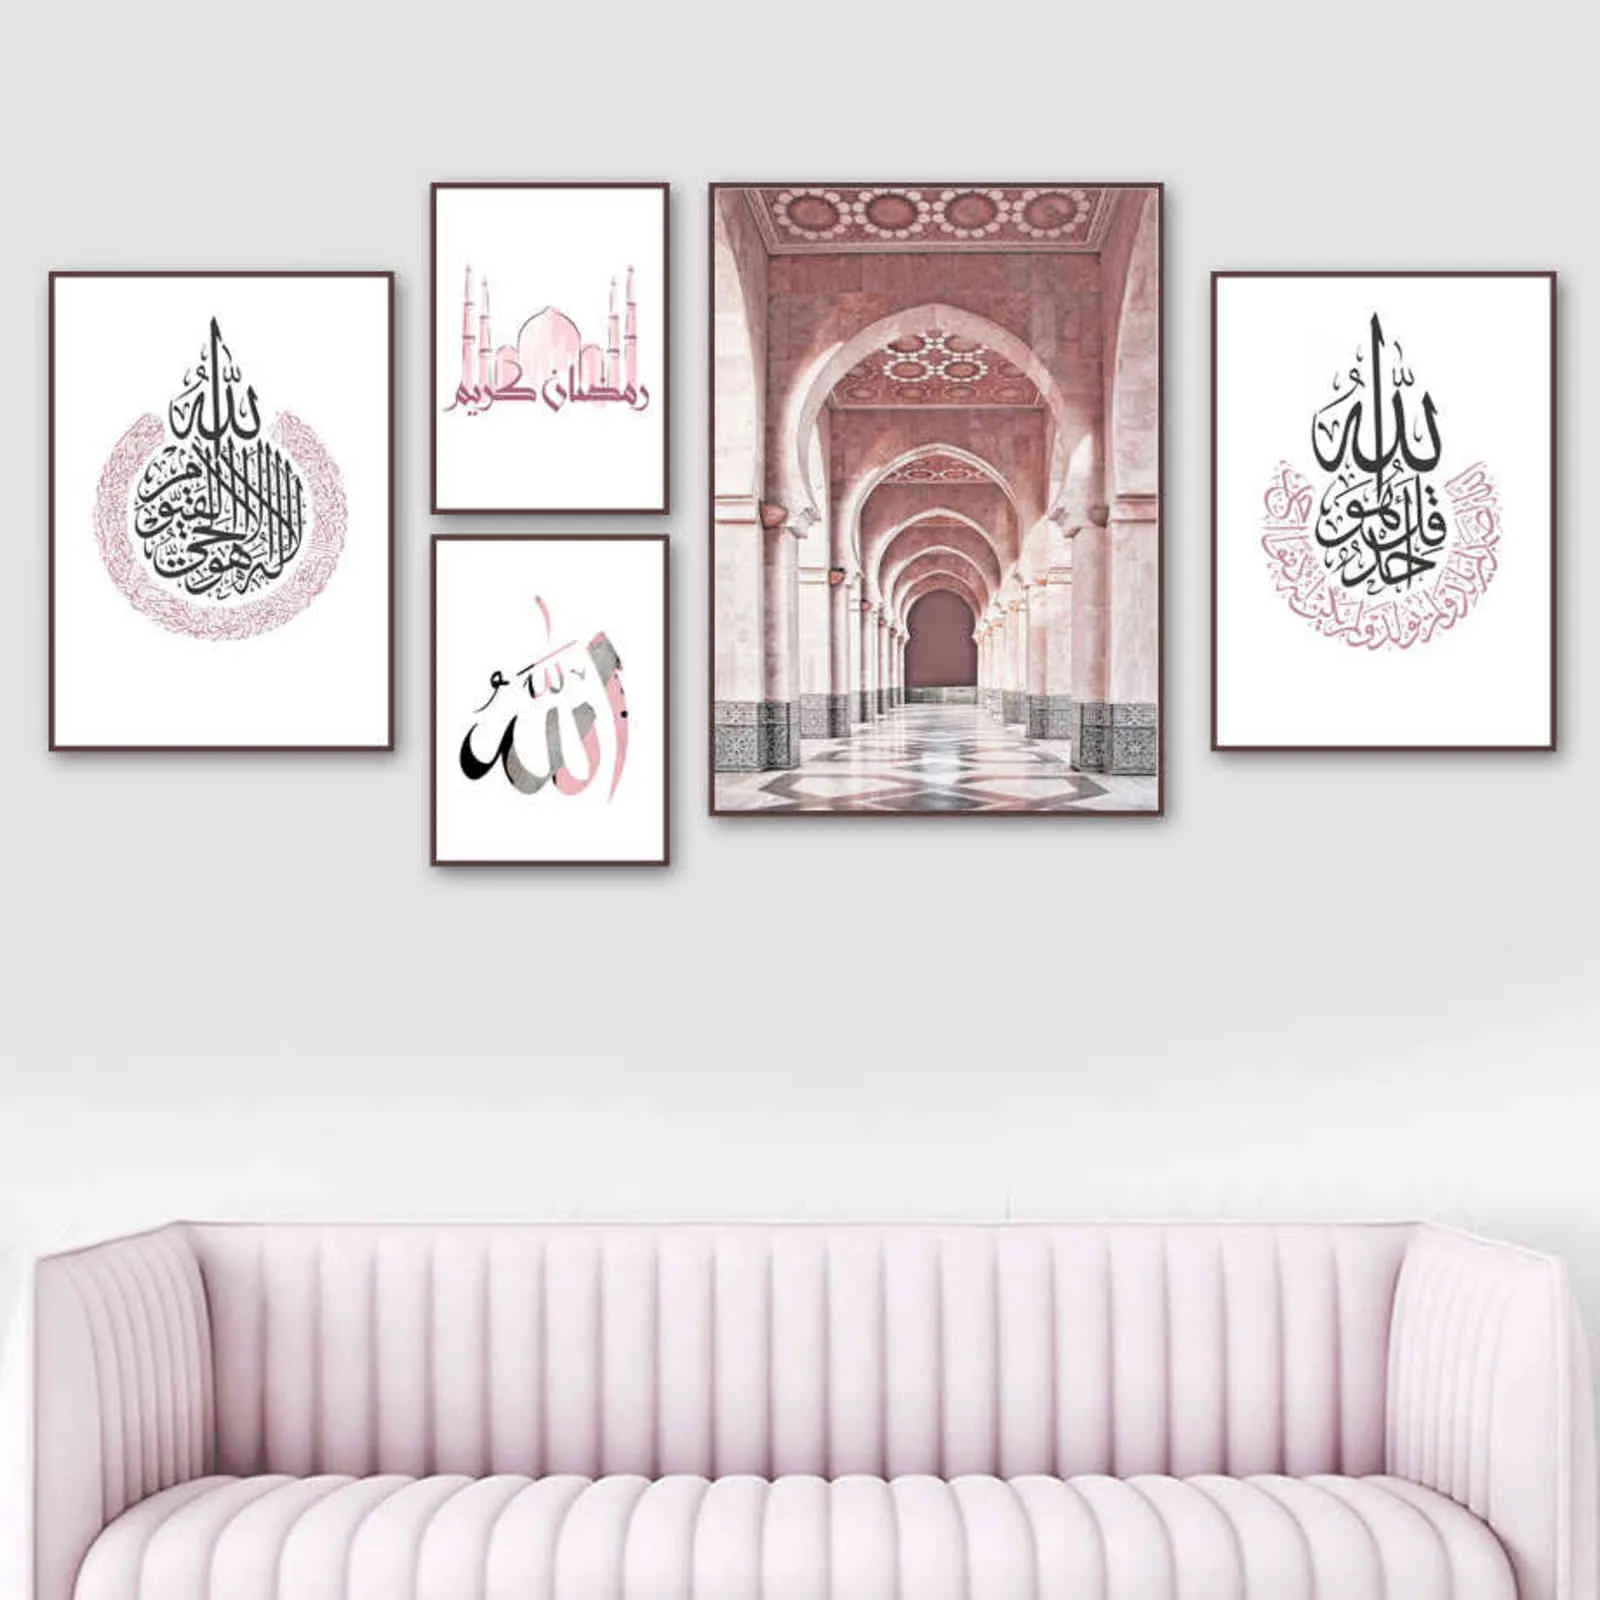 모로코 모스크 아랍어 서예 이슬람 포스터 벽 아트 인쇄 캔버스 그림 노르딕 벽 그림 거실 장식 H1110